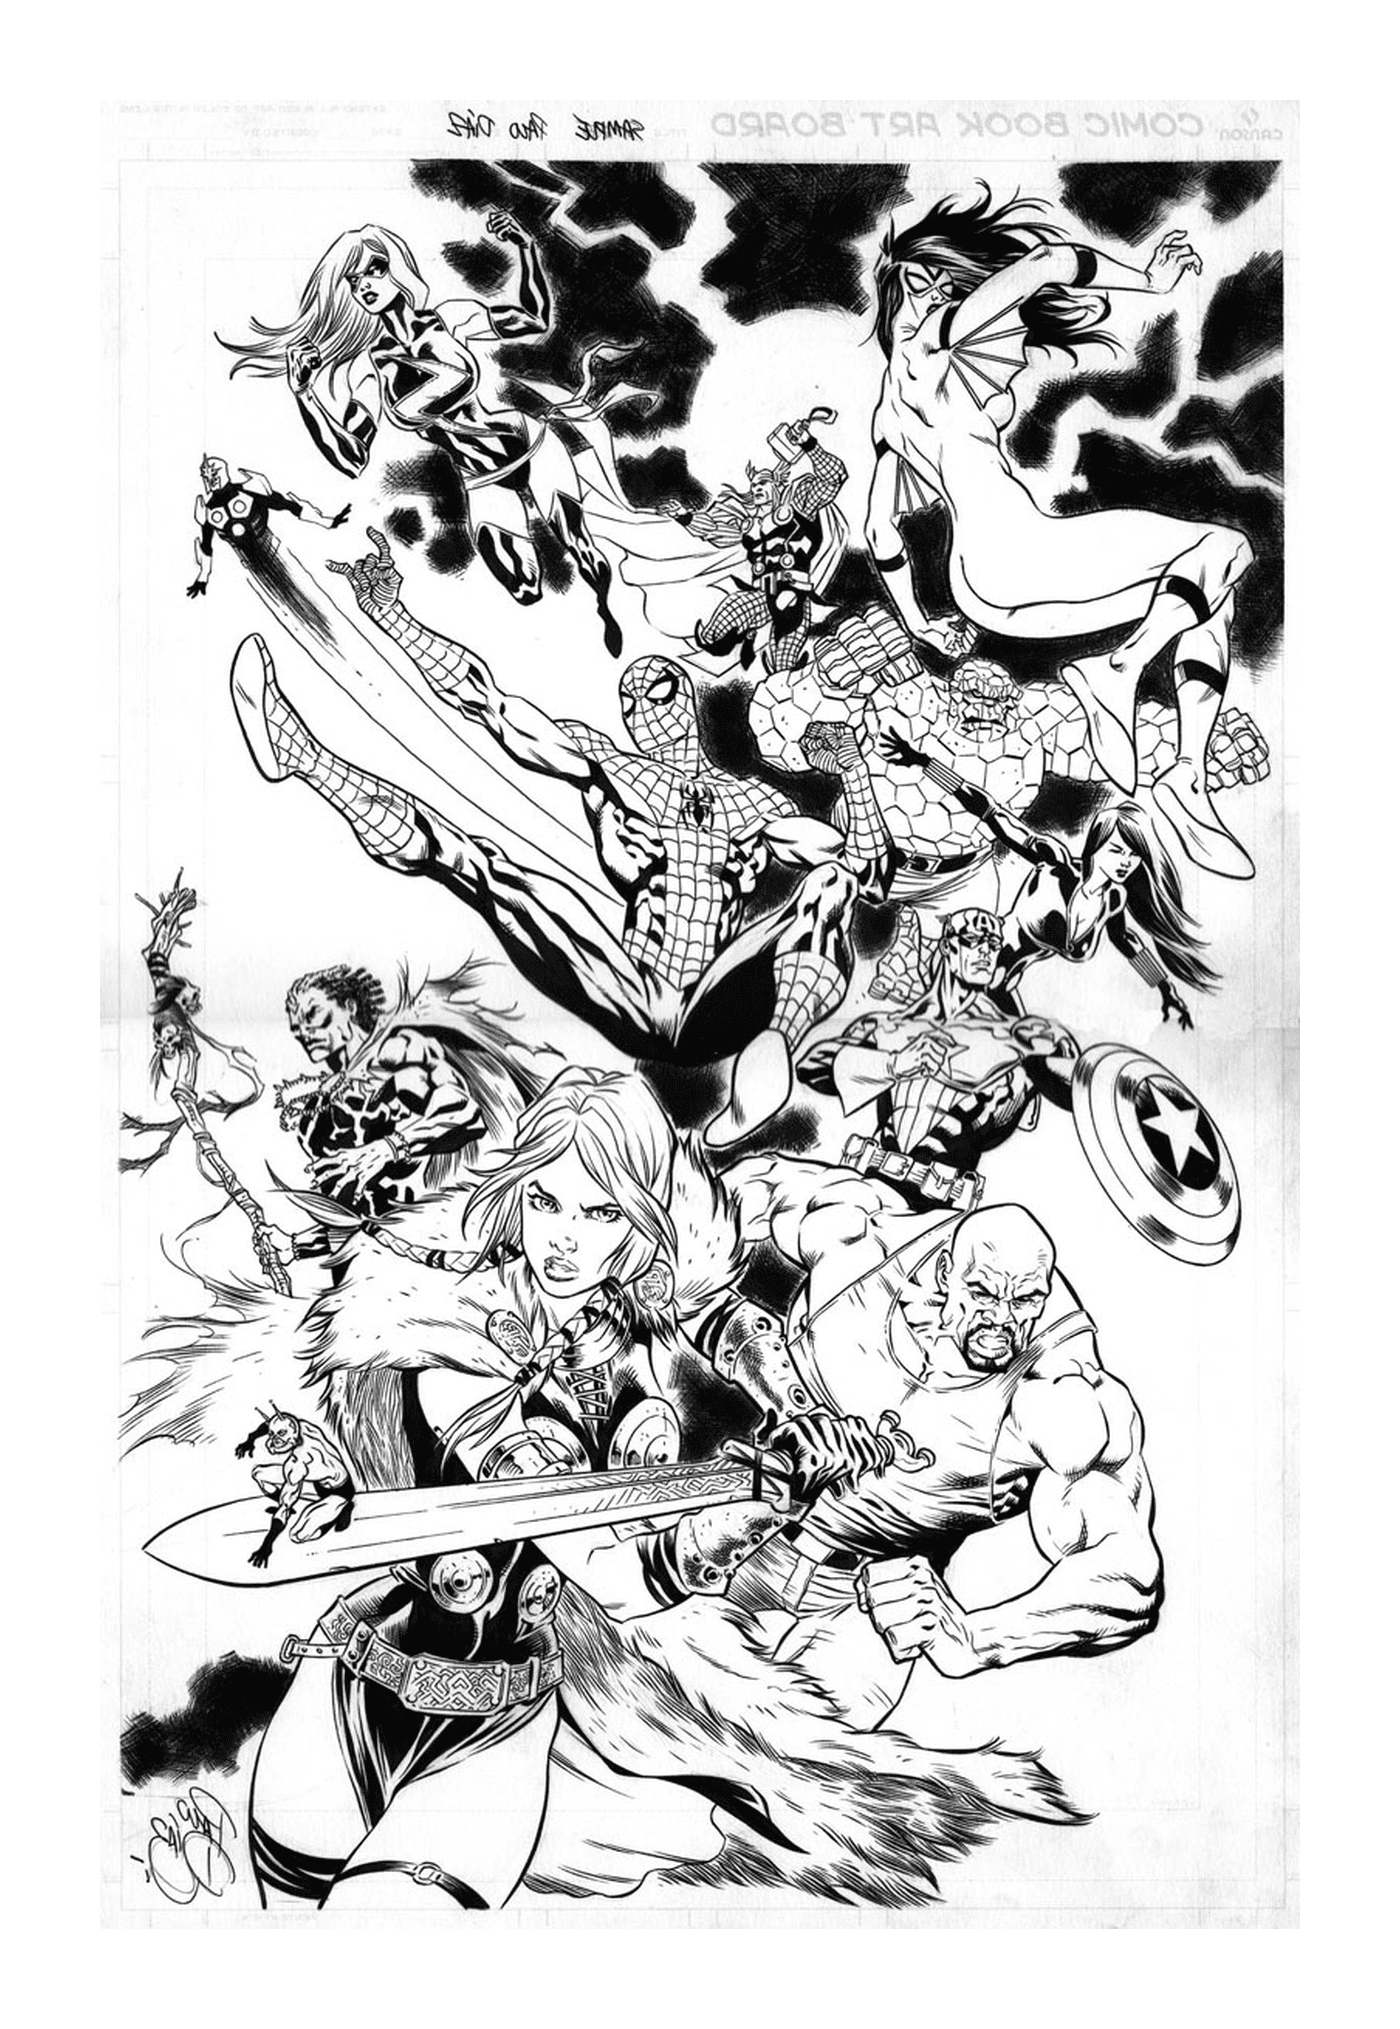   Un groupe de super-héros en noir et blanc 